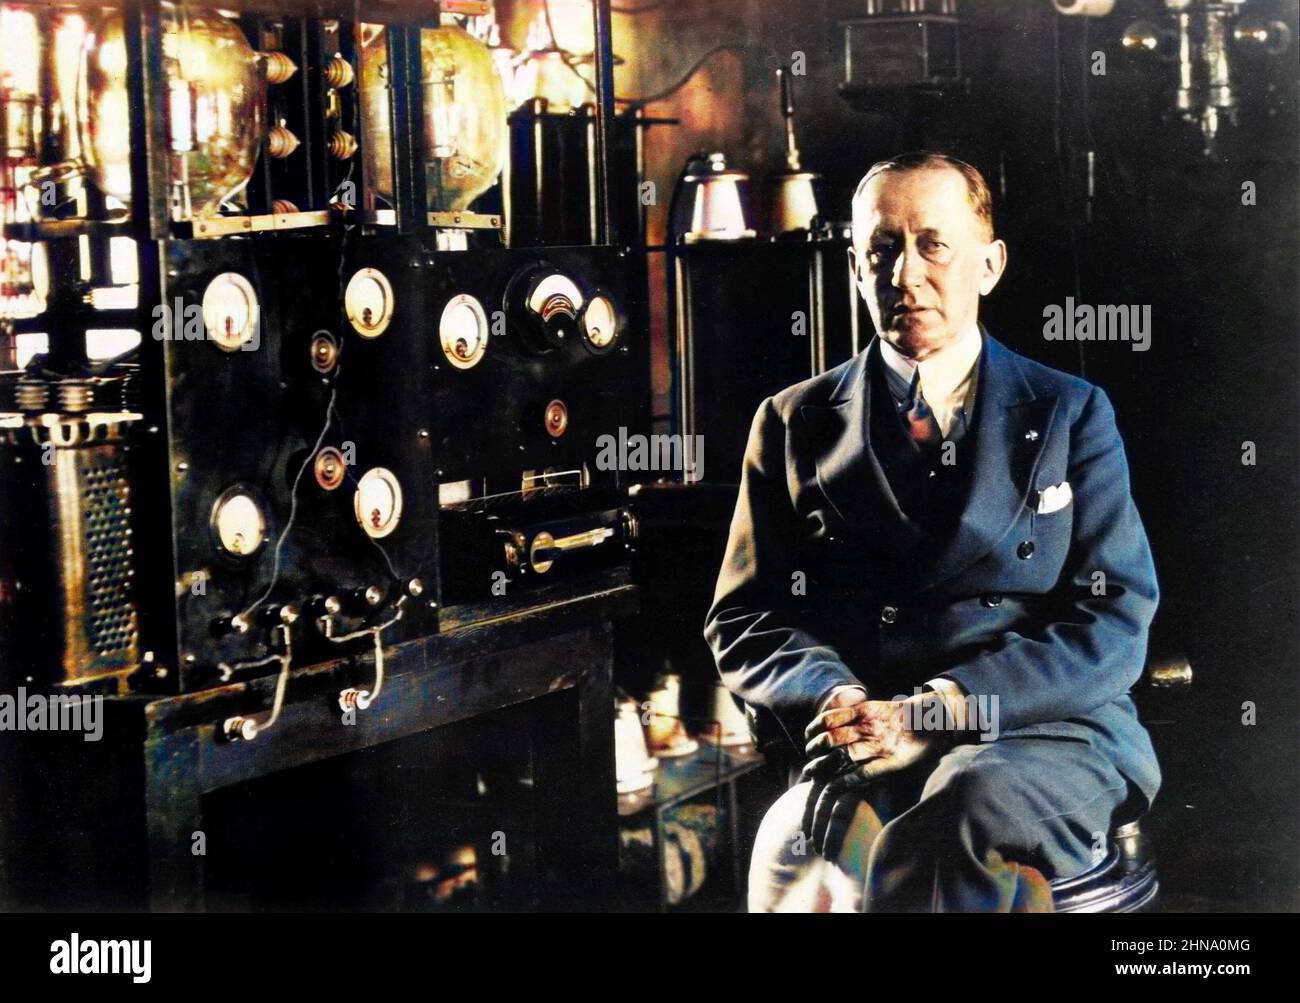 Ritratto dell'inventore italiano e pioniere radiofonico Guglielmo Marconi seduto di fronte ad un telegrafo in laboratorio a bordo del suo yacht 'Electraa'. Circa 1935 Foto Stock